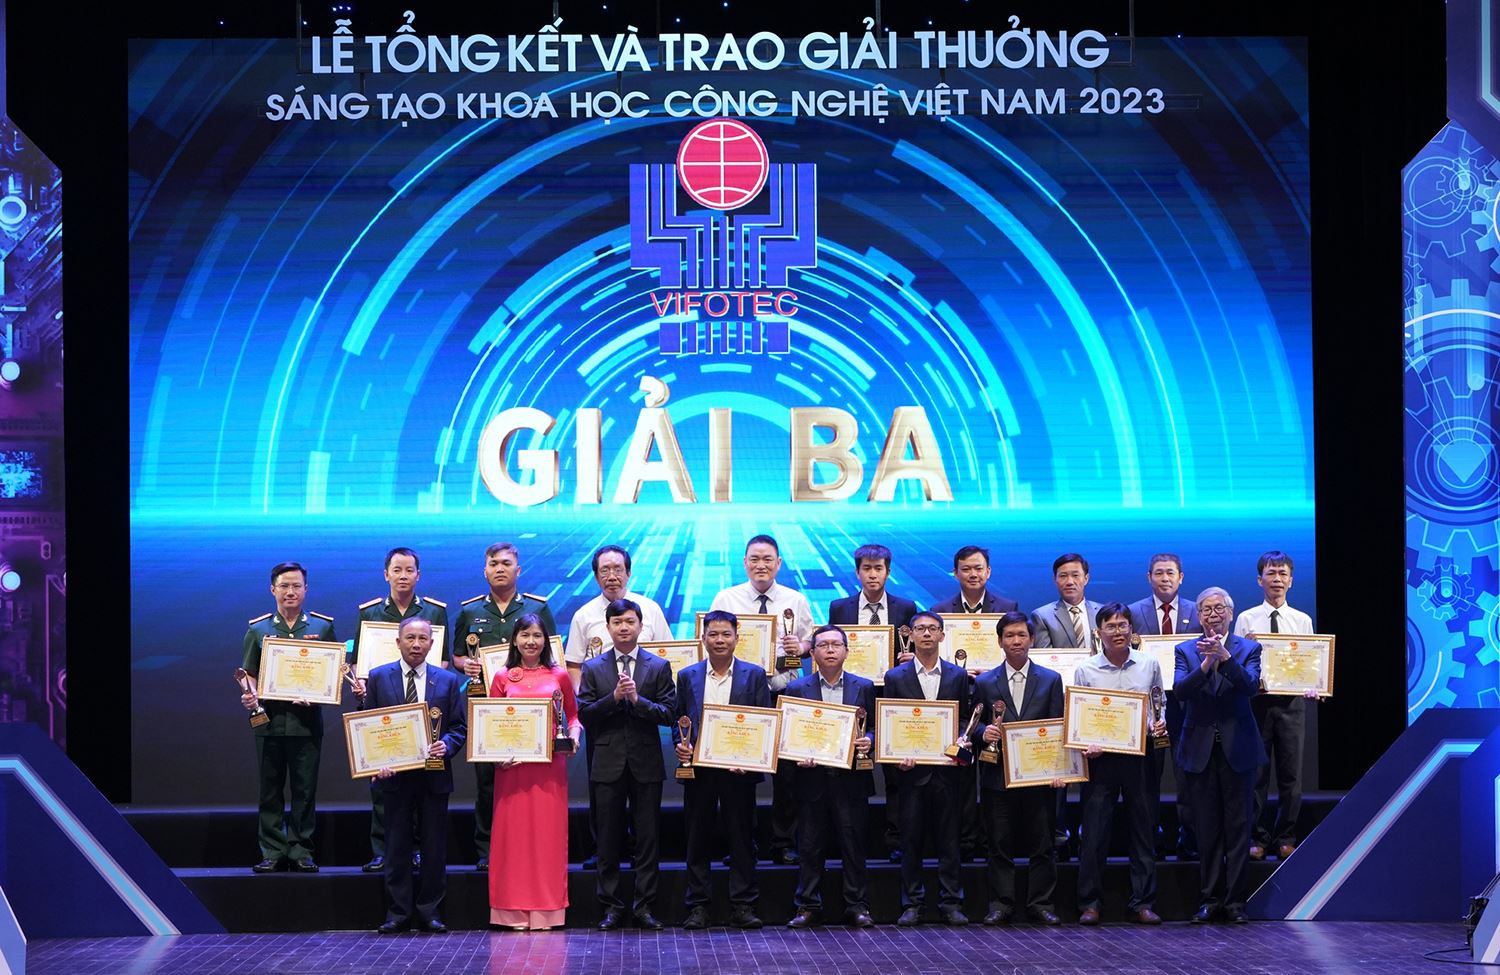 Giảng viên Trường Đại học Hồng Đức vinh dự nhận giải thưởng sáng tạo khoa học - công nghệ Việt Nam